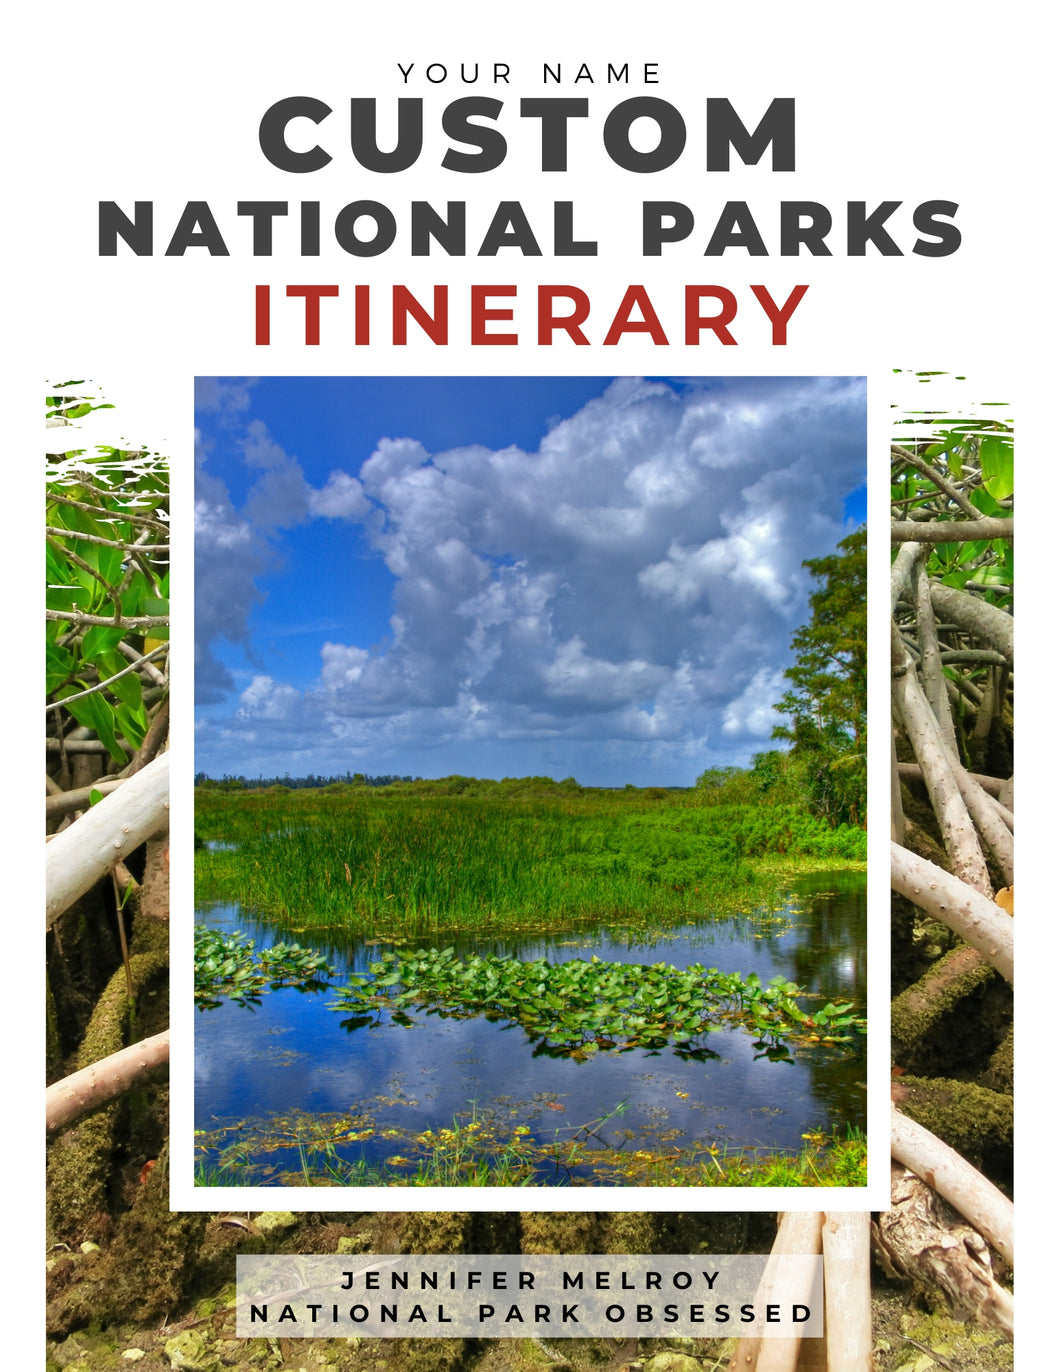 National Park Custom Itinerary Service